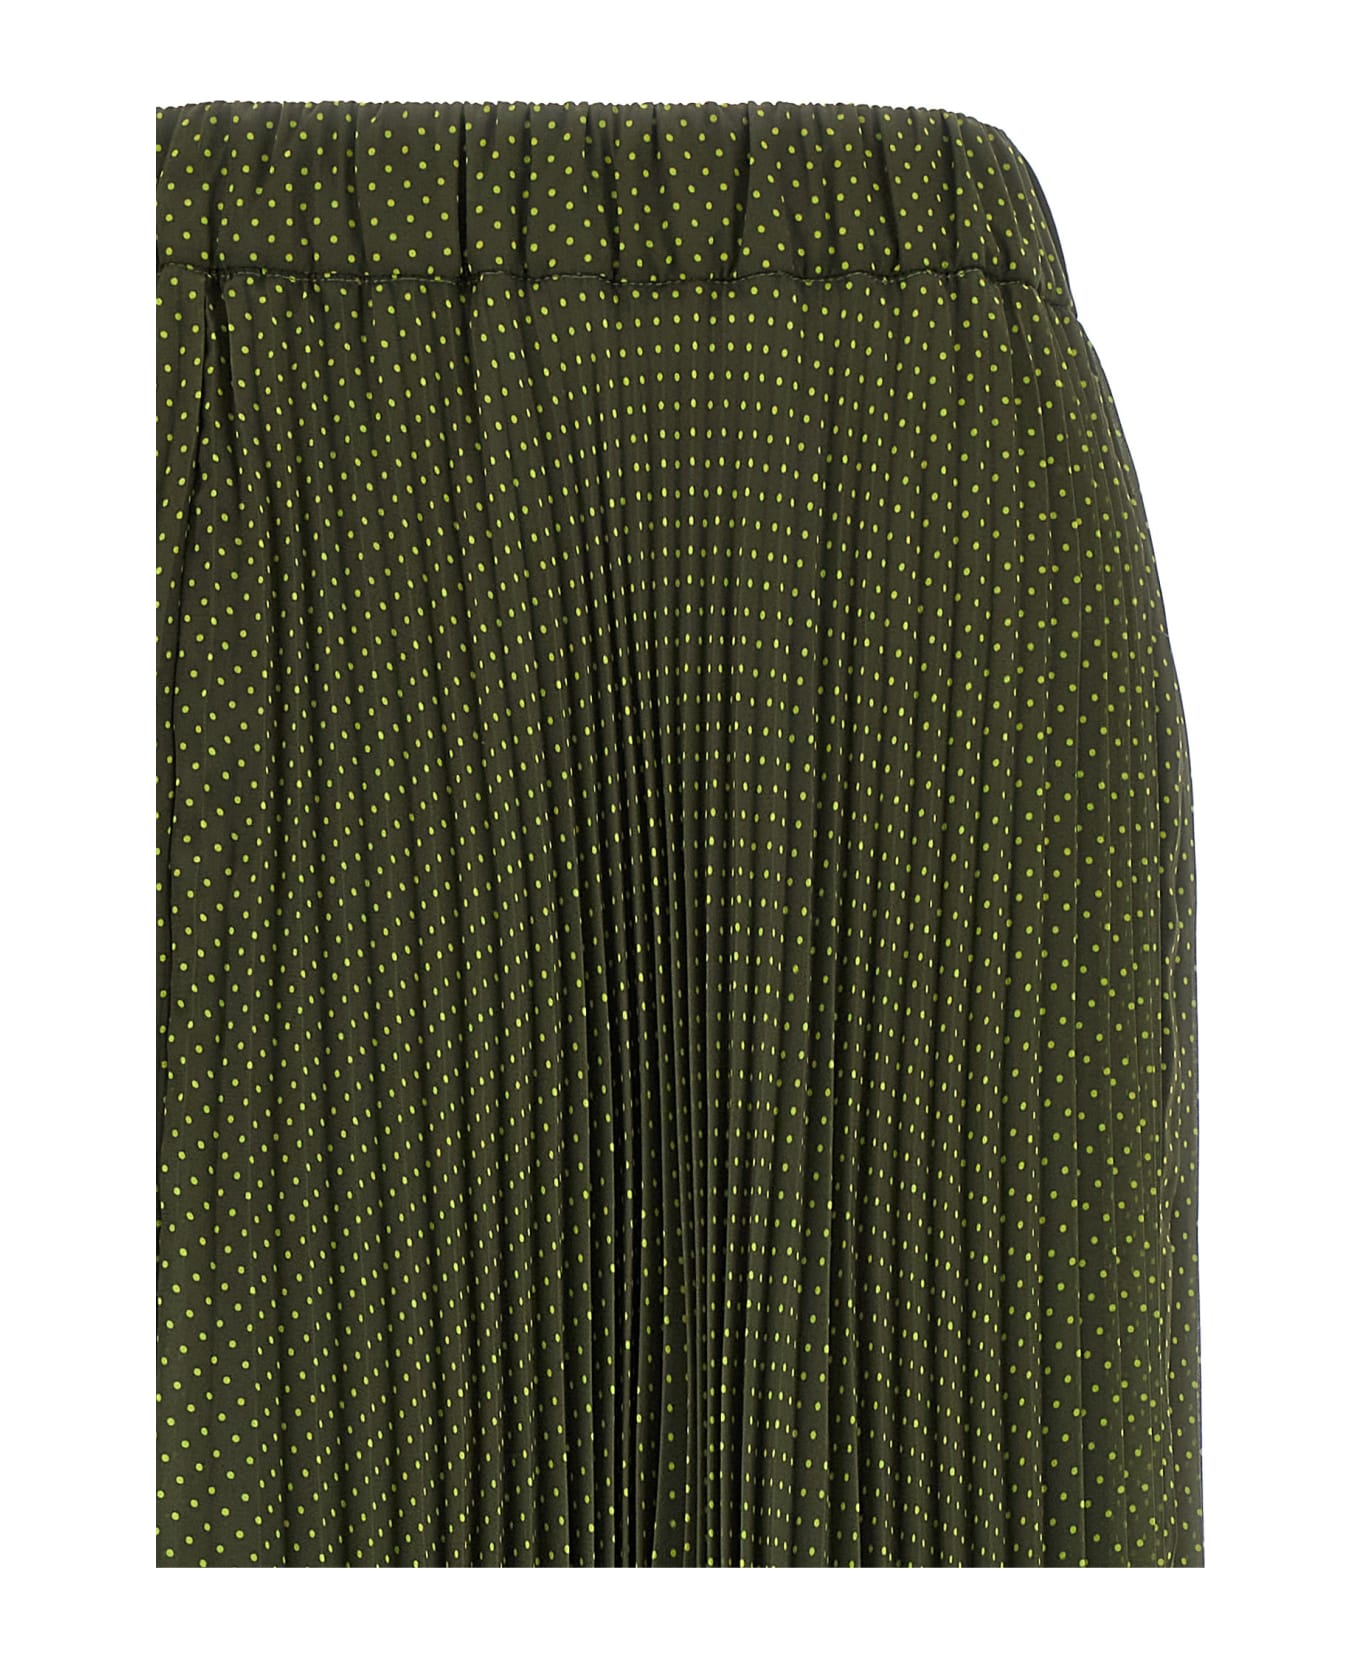 Parosh Pol Polky Plisè Skirt - Green